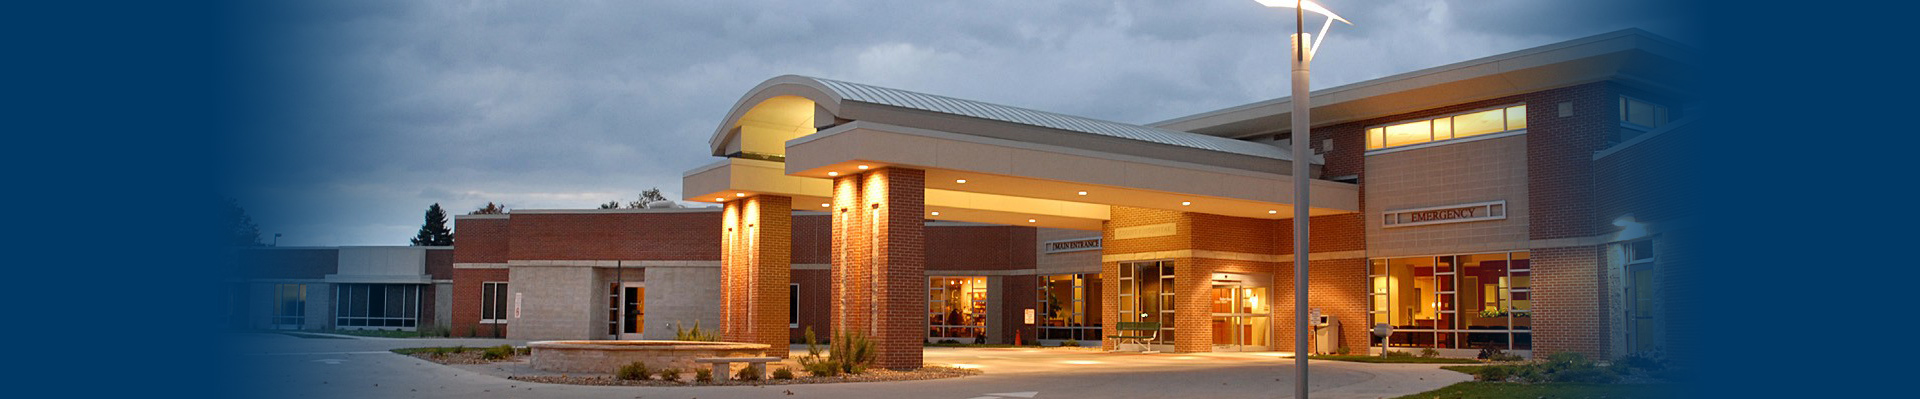 Washington County Hospital and Clinics